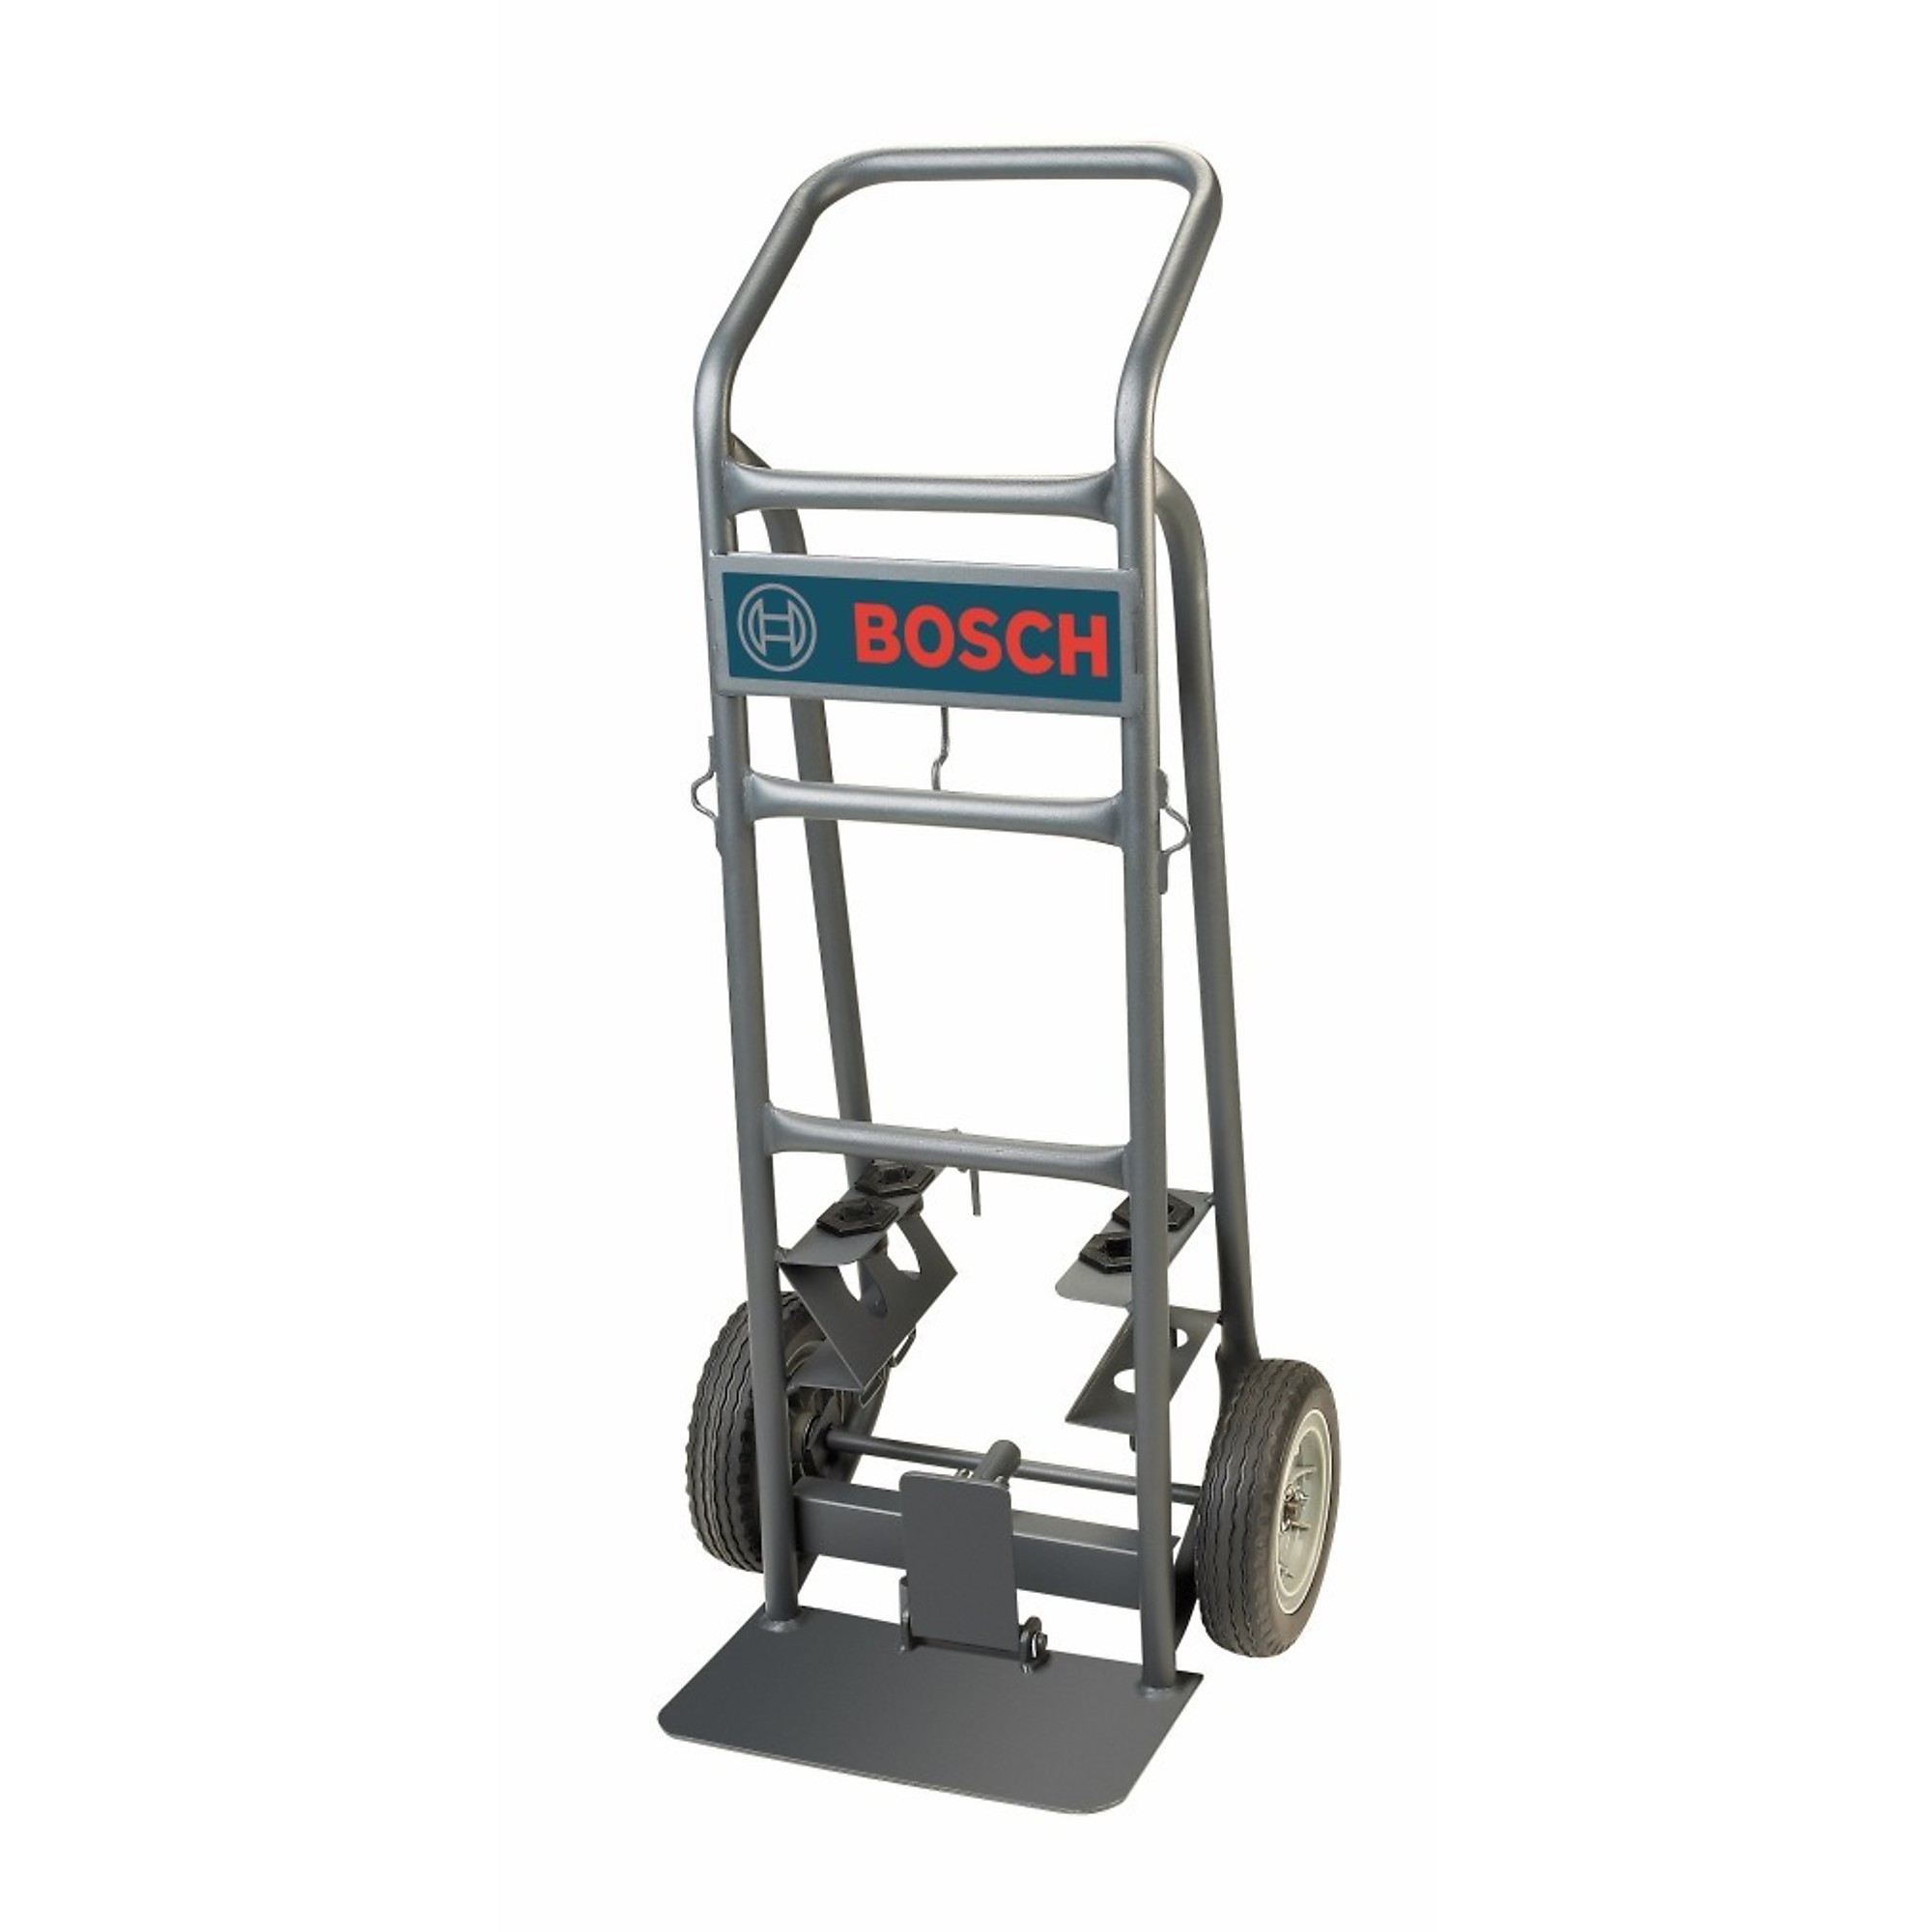 Bosch, Deluxe Hammer Cart, Amps 0, Volts 0, Max. Blows Per Minute 0, Model T1757